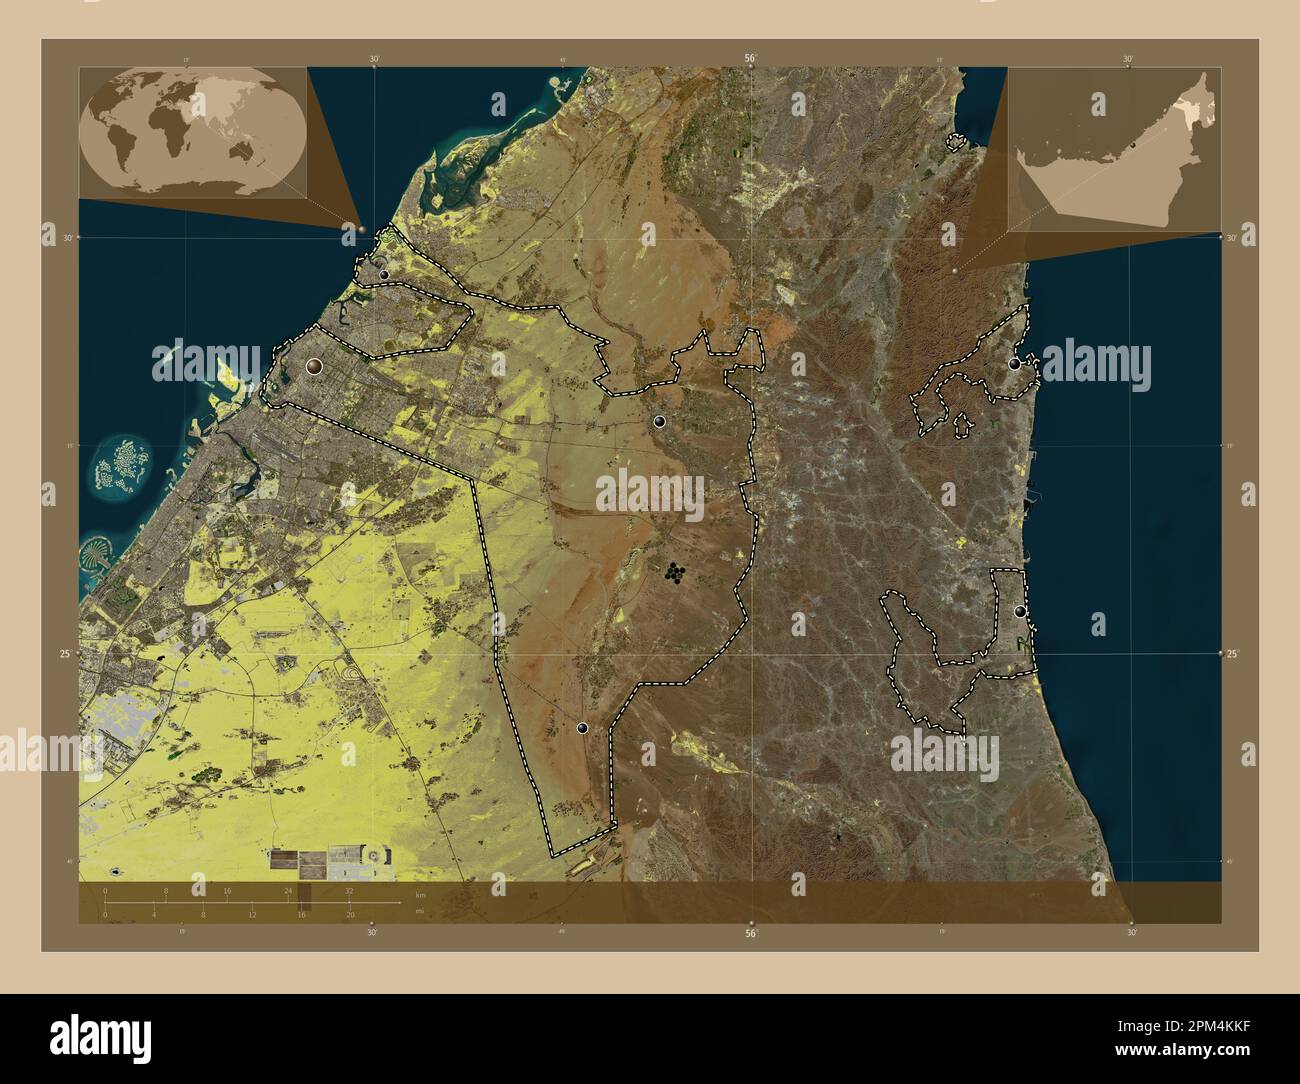 Sharjah, emirato degli Emirati Arabi Uniti. Mappa satellitare a bassa risoluzione. Posizioni delle principali città della regione. Mappe delle posizioni ausiliarie degli angoli Foto Stock